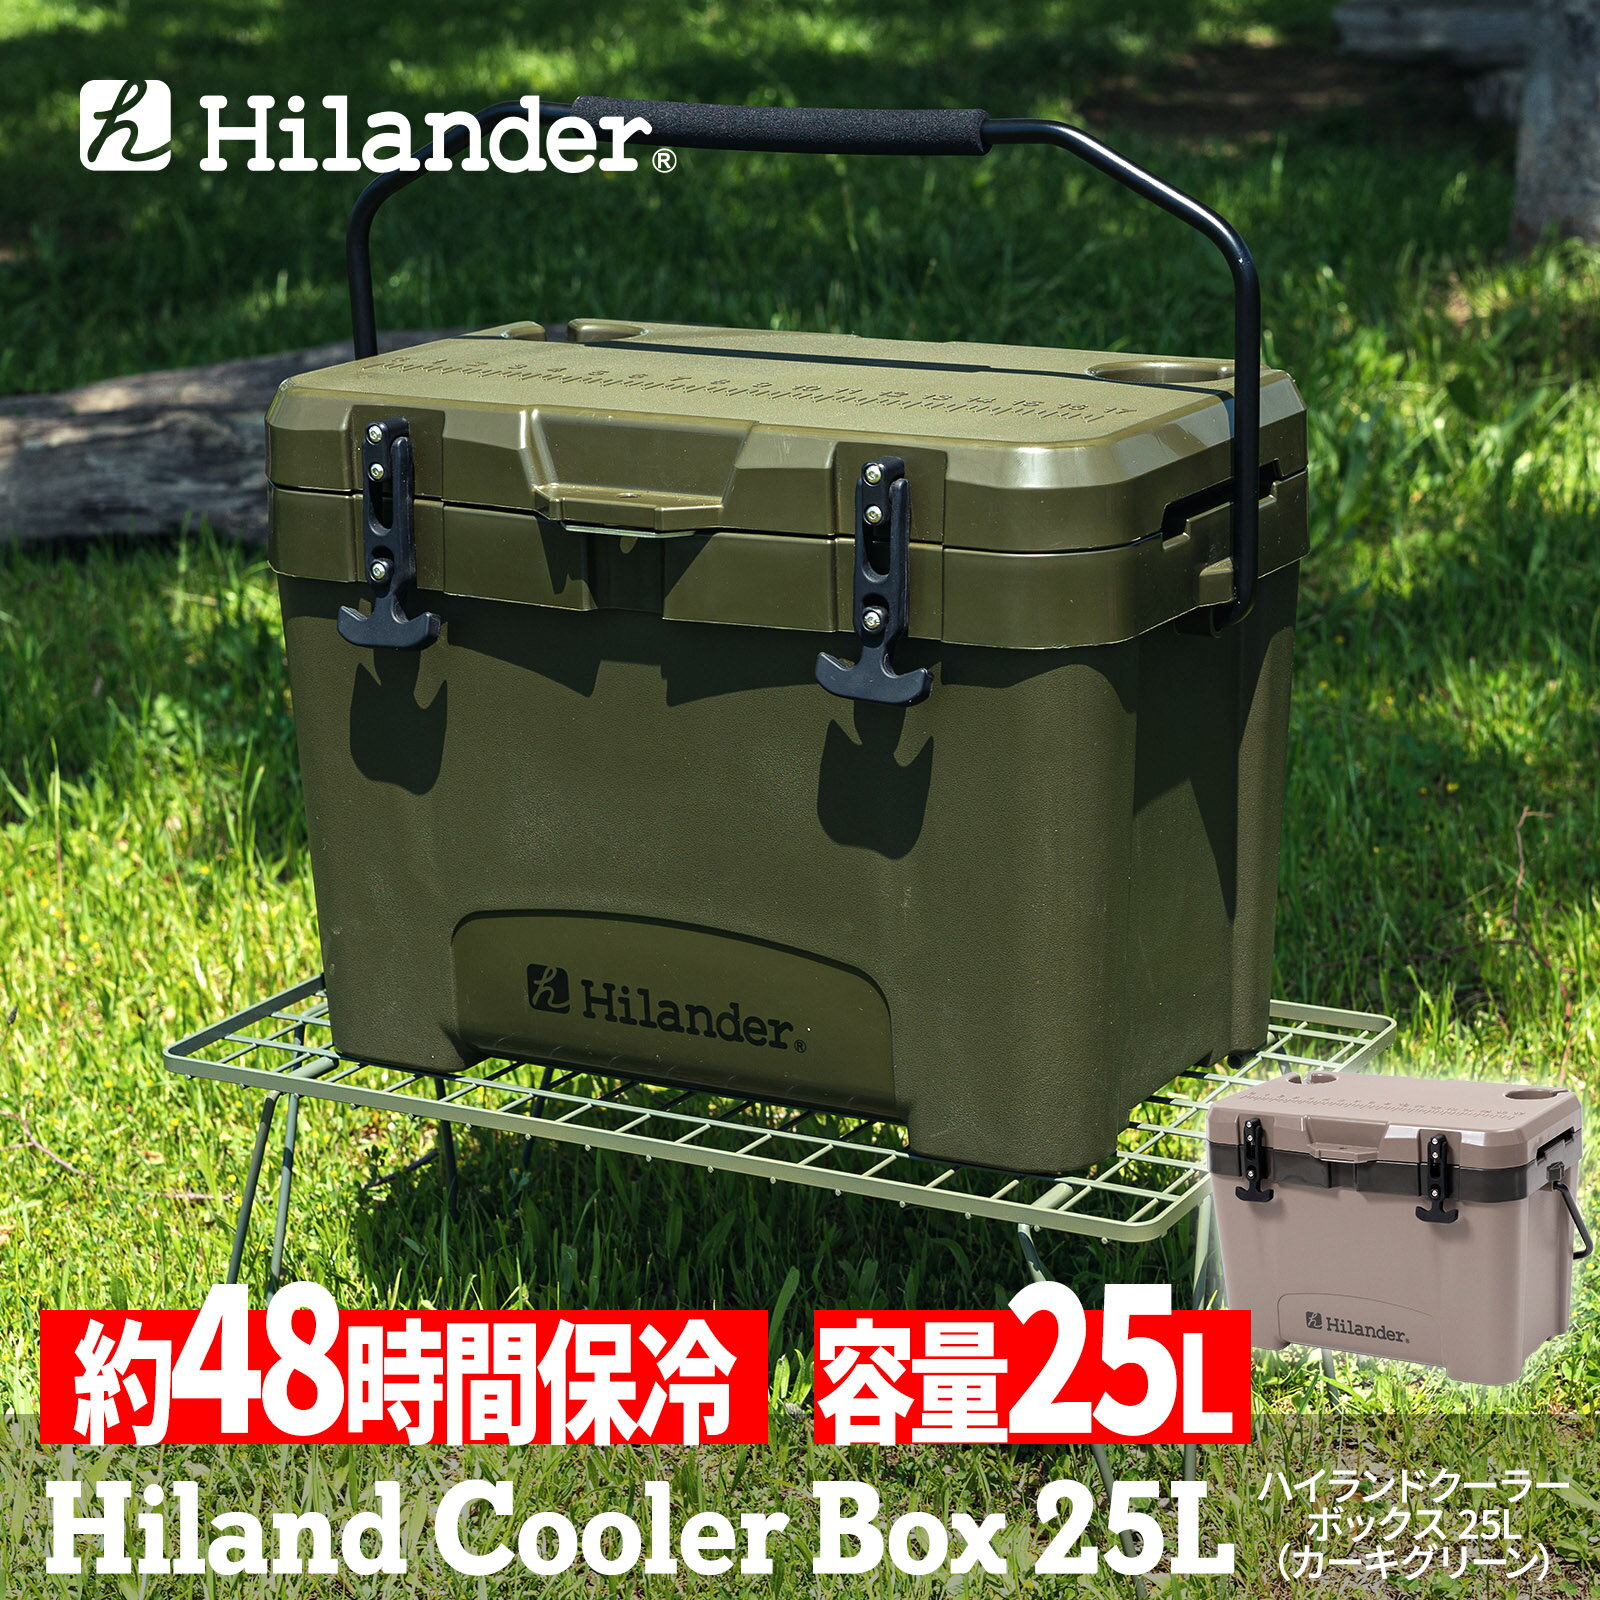 【ポイントアップ中！5/13まで】 Hilander(ハイランダー) ハイランドクーラーボックス 25L クーラーBOX ハード【1年保証】 カーキグリーン HCT-033 1